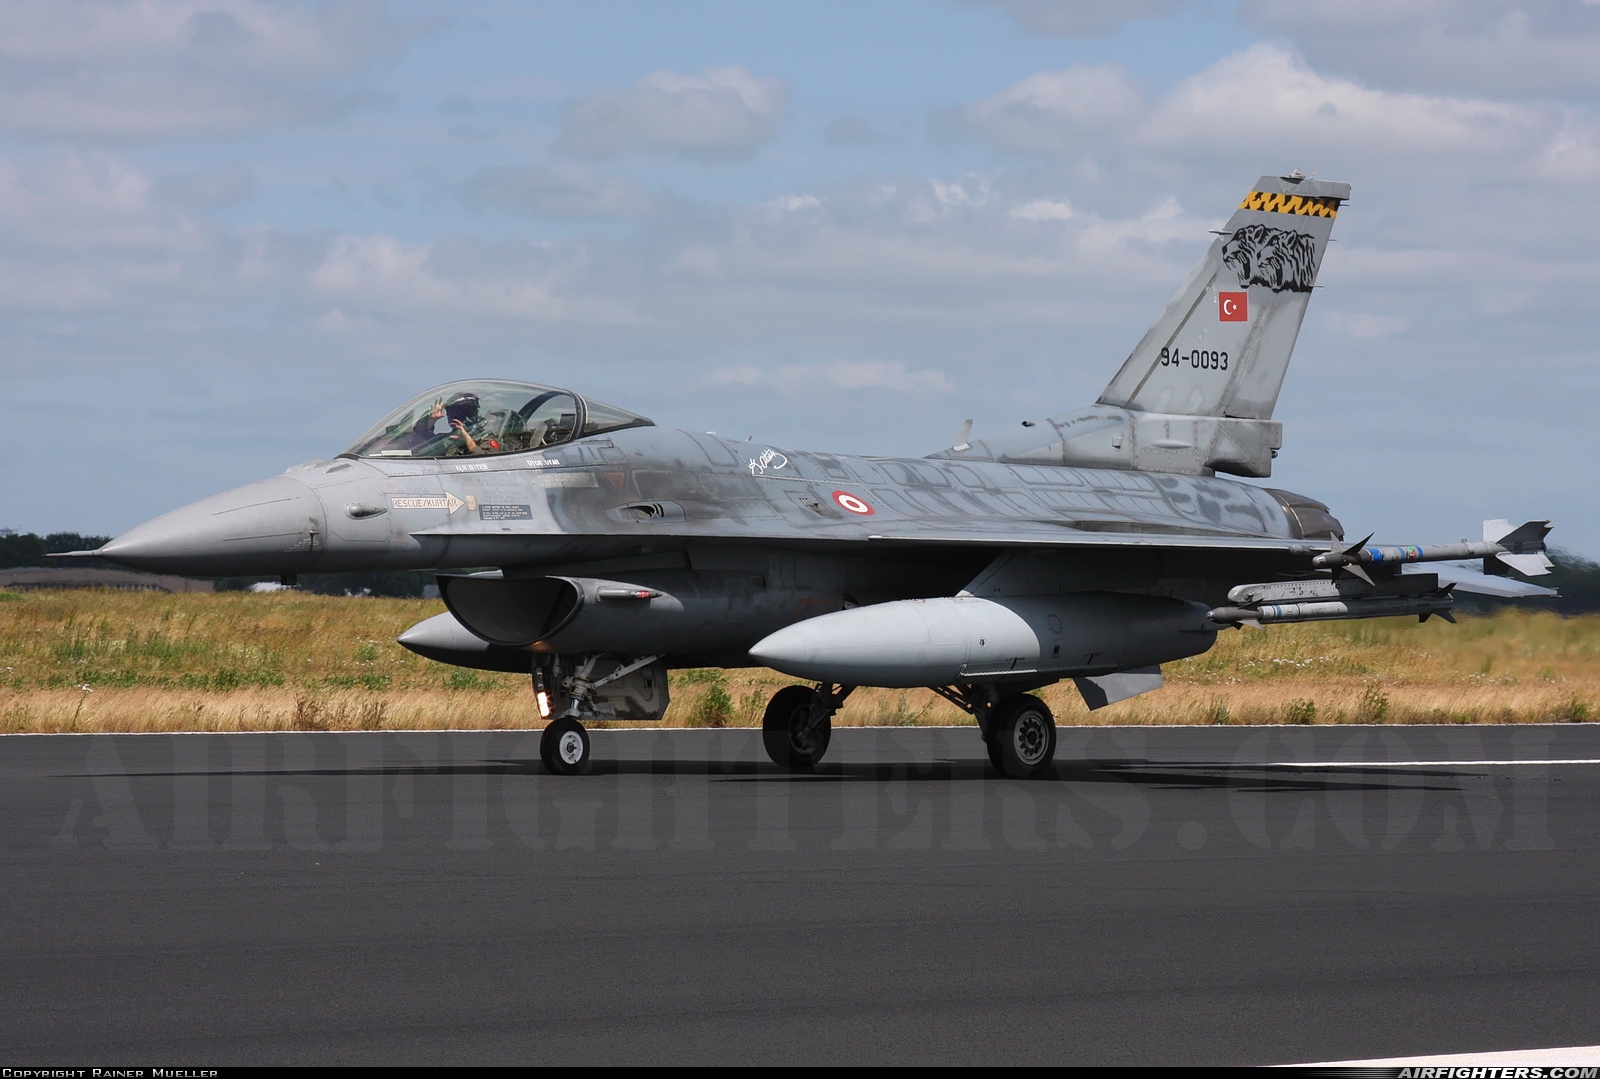 Türkiye - Air Force General Dynamics F-16C Fighting Falcon 94-0093 at Schleswig (- Jagel) (WBG / ETNS), Germany